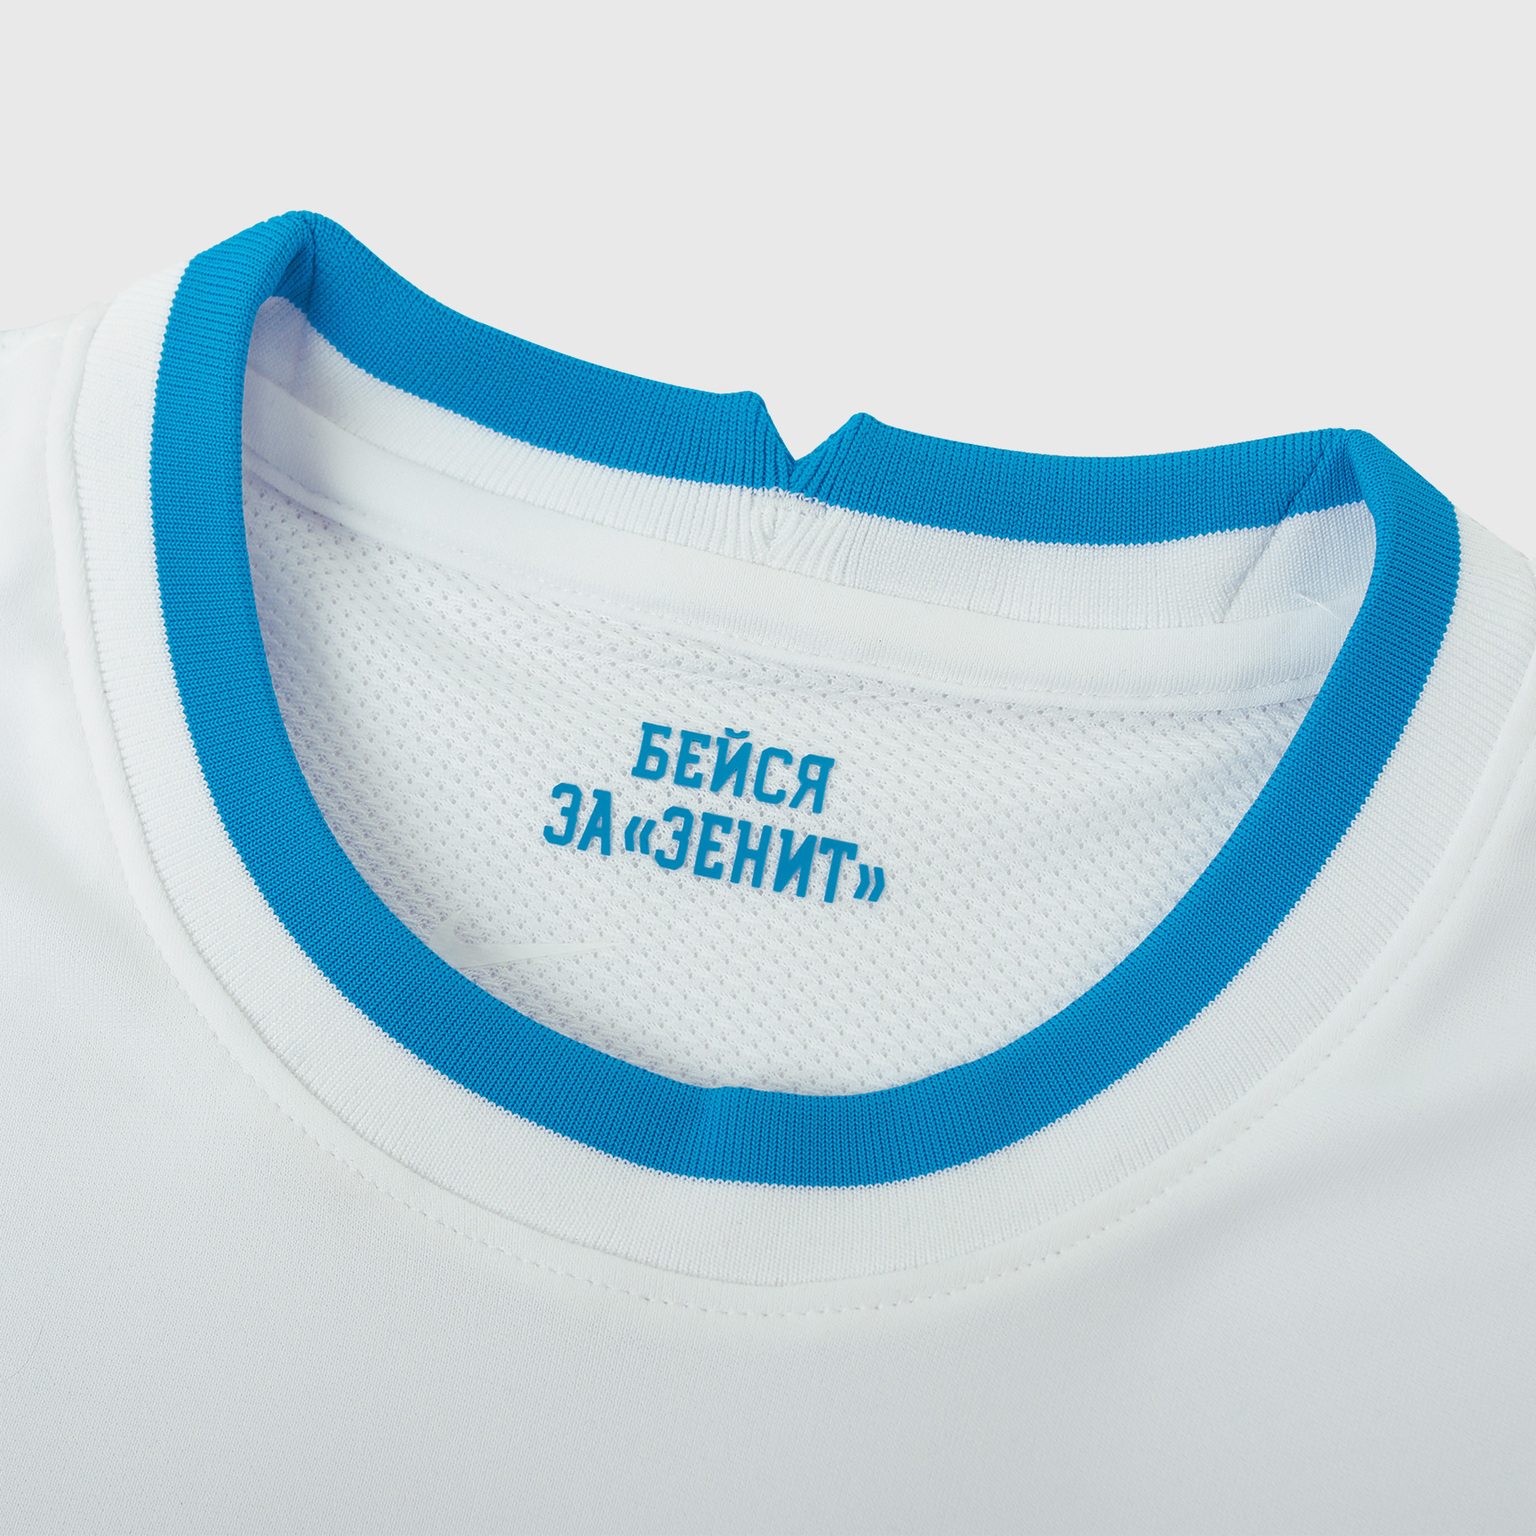 Оригинальная выездная футболка Nike Zenit сезон 2021/22